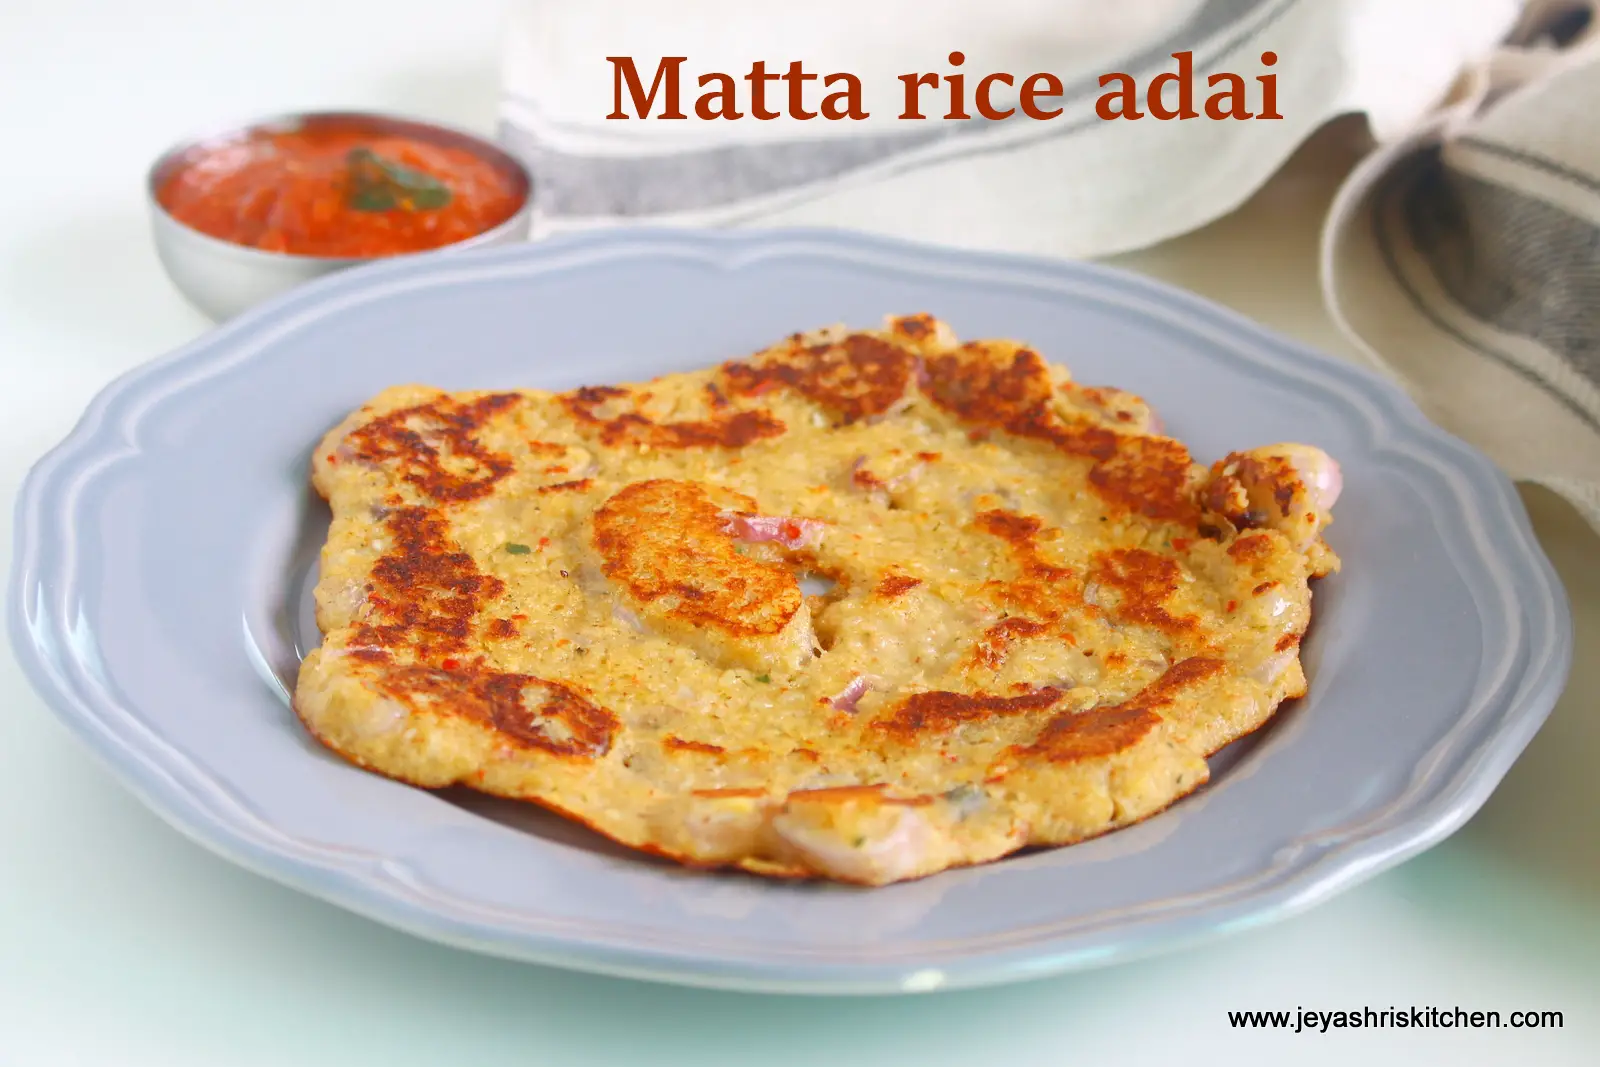 Kerala matta rice adai